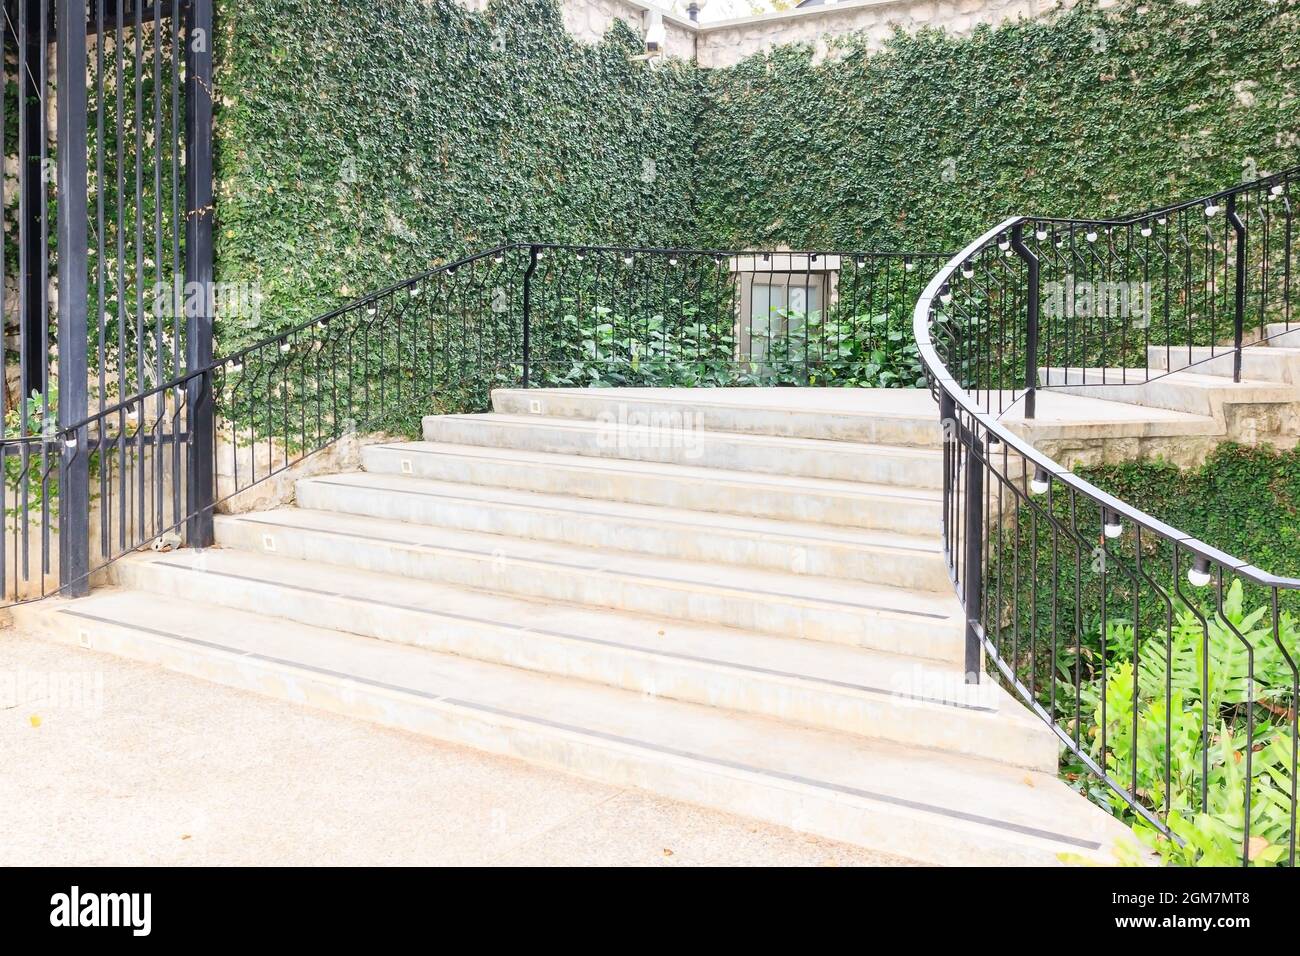 Paysage dans le jardin du parc.escalier en pierre avec rambarde de fer et herbe verte environnante, fleurs et arbres Banque D'Images